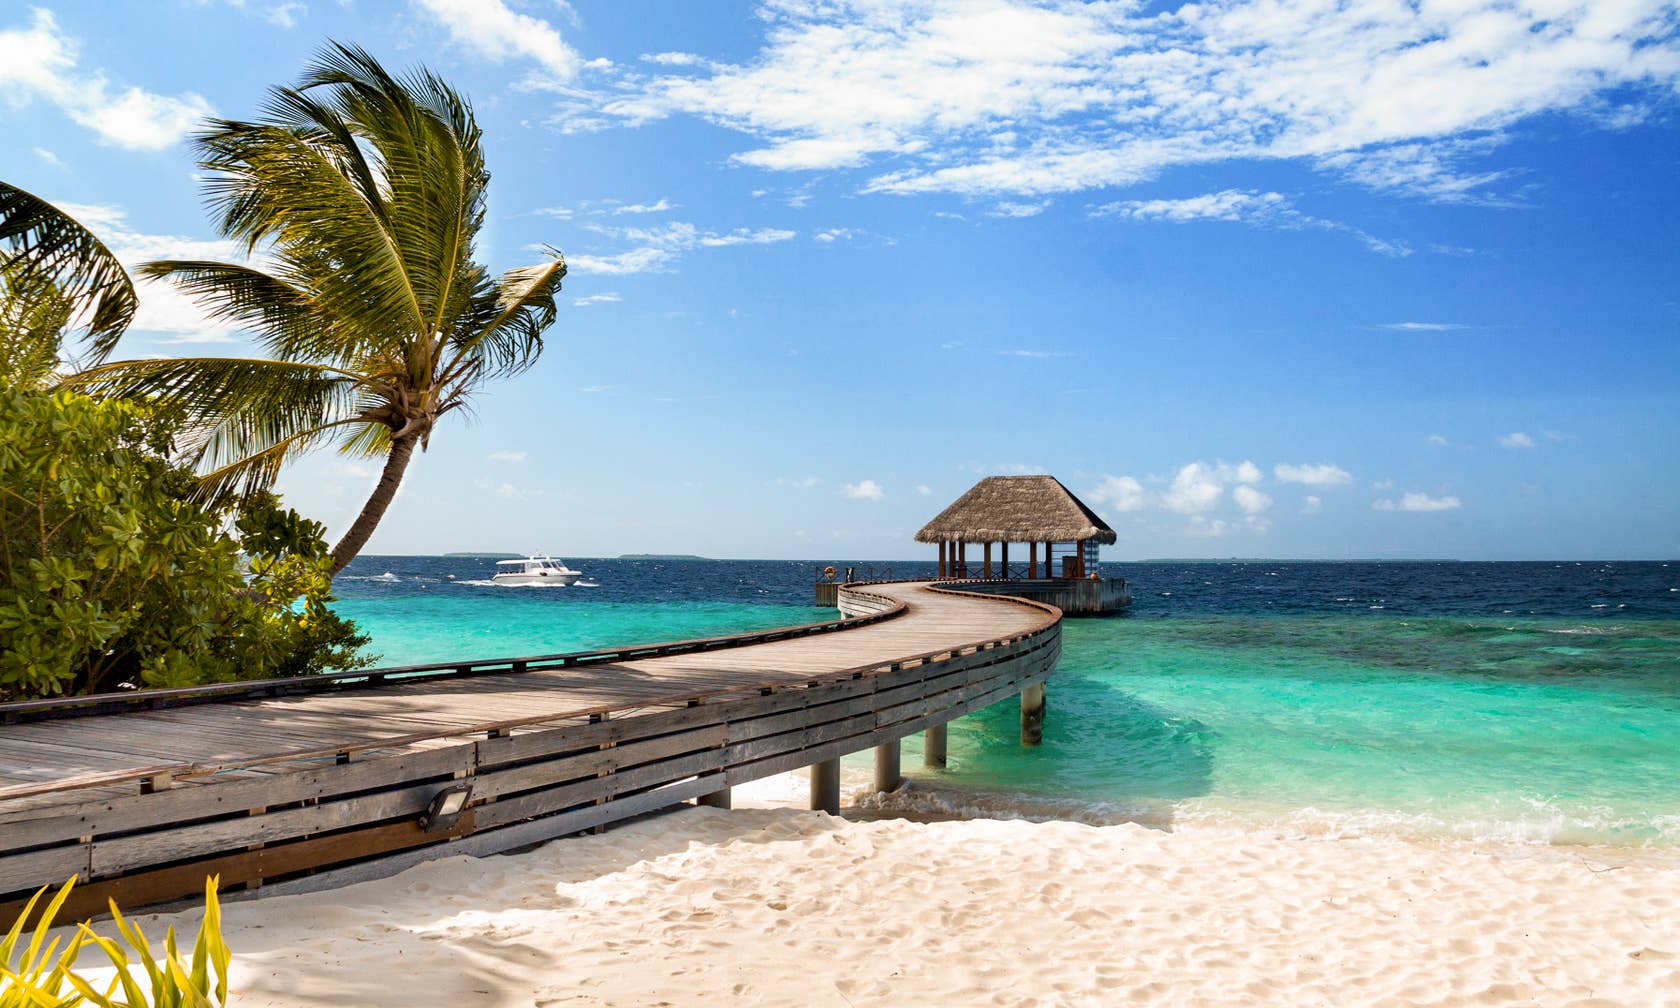 Bérbeadó nyaralók itt: Maldív-szigetek